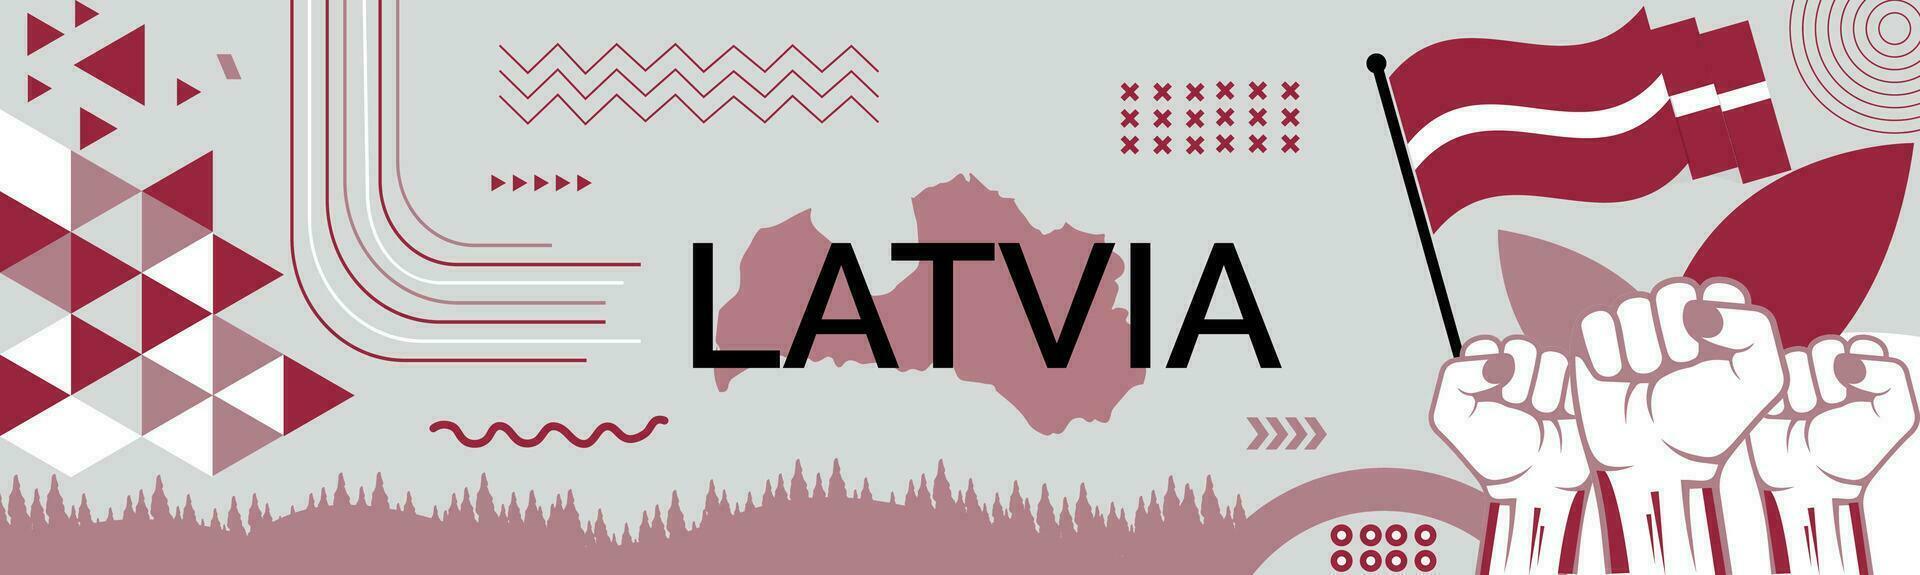 Letonia nacional día bandera con mapa, bandera colores tema antecedentes y geométrico resumen retro moderno colorido diseño con elevado manos o puños vector